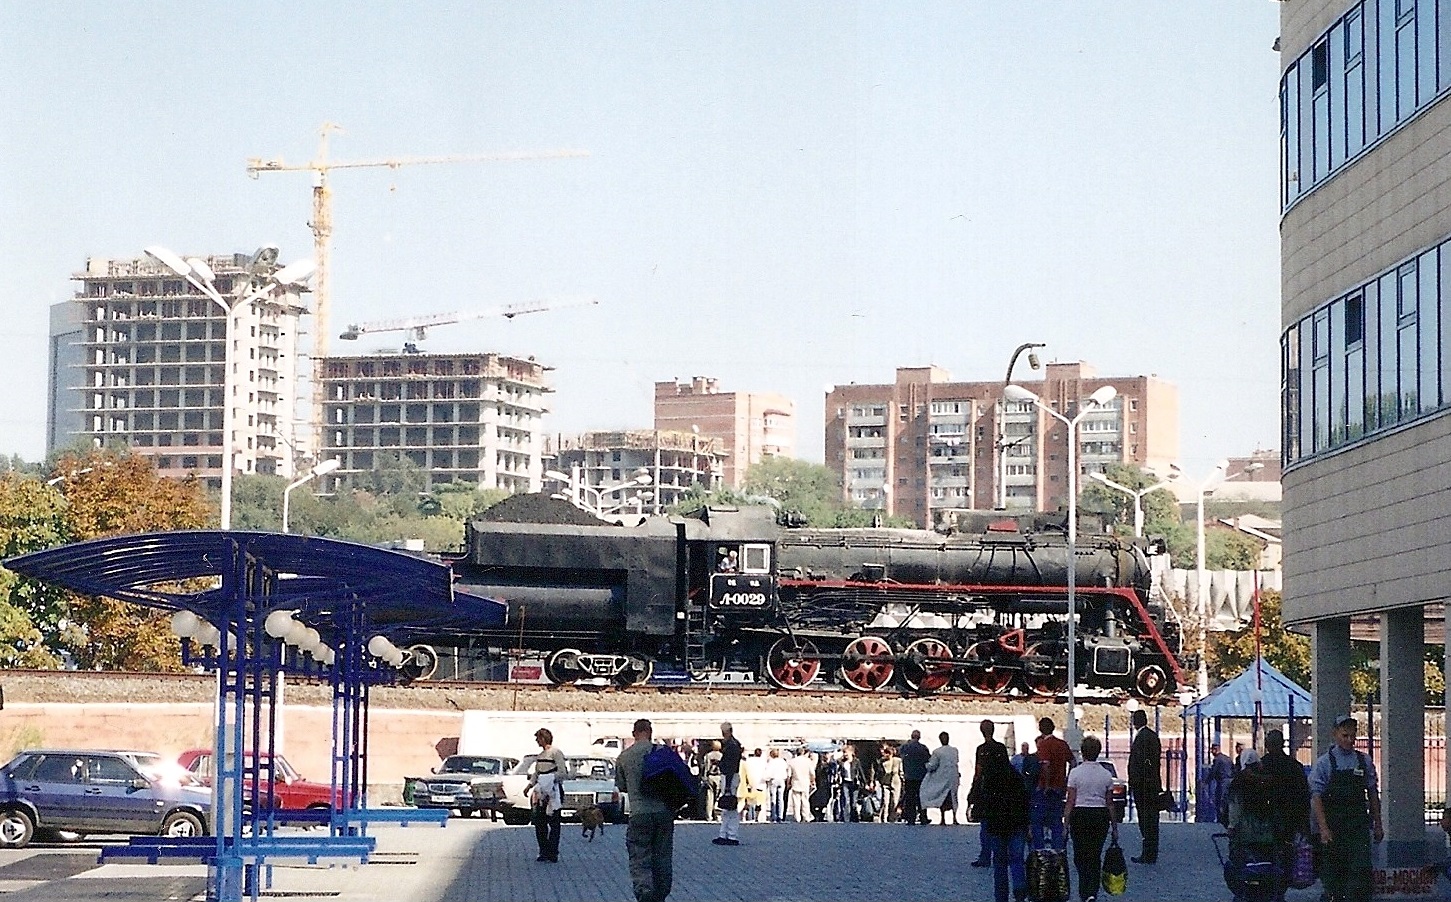 Паровоз Л-0029 на реконструированной привокзальной площади Ростова. Сентябрь 2005 г.